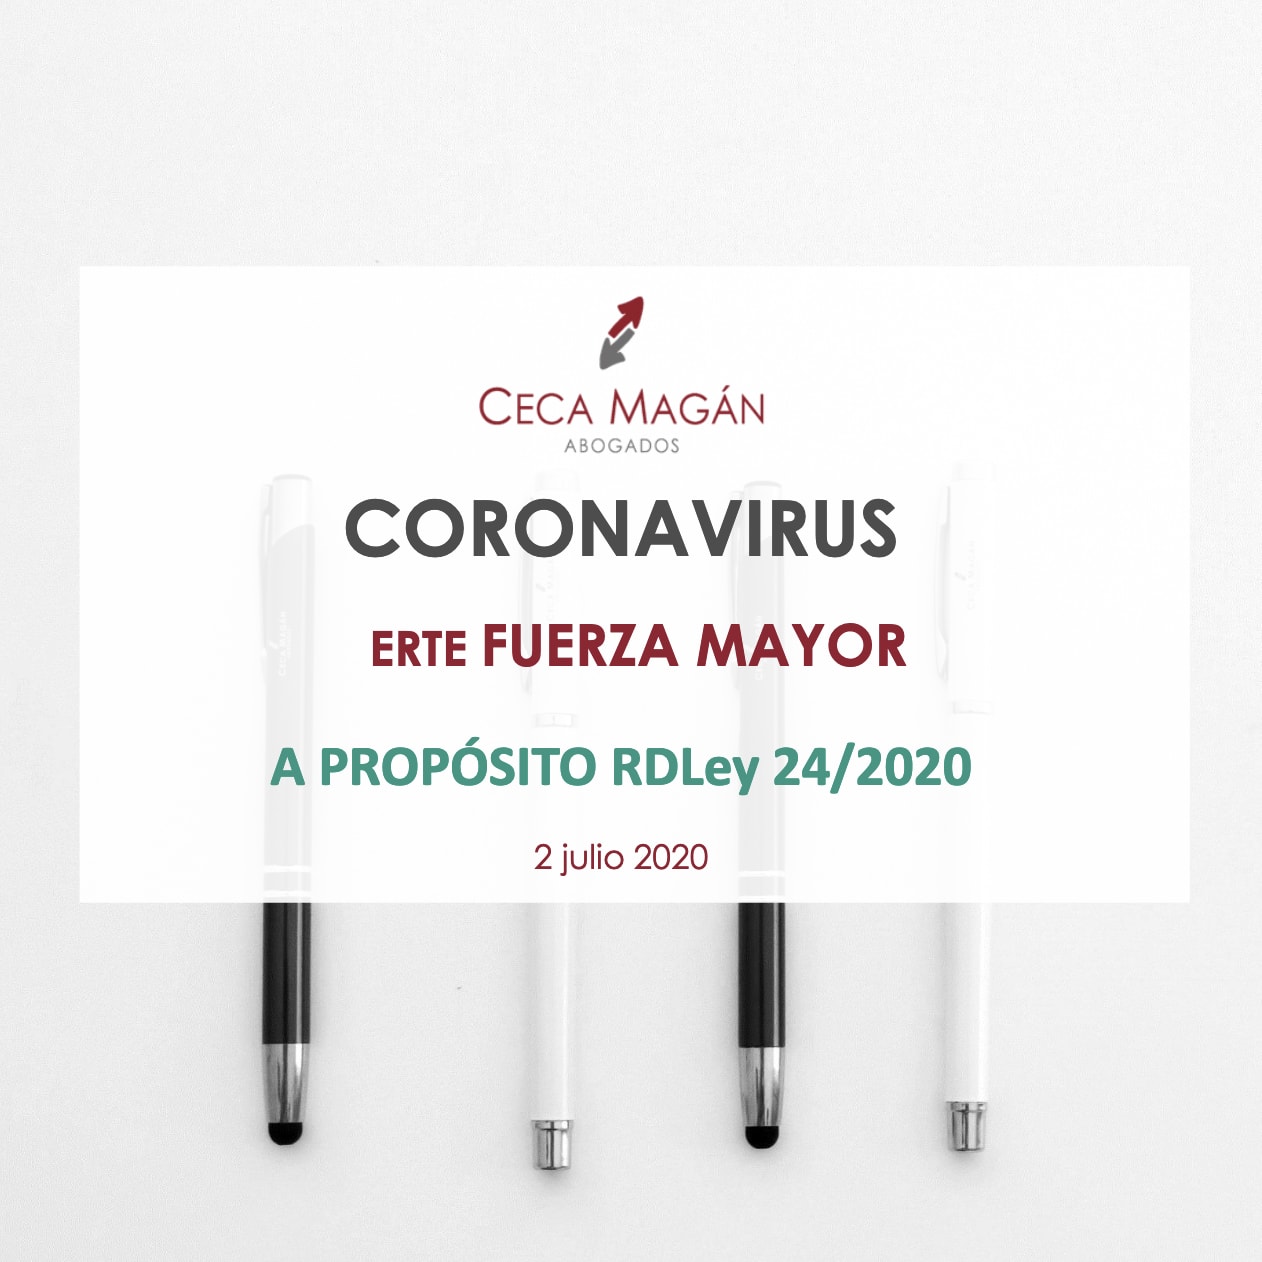 Guía gratuita: “Coronavirus: ERTE por Fuerza Mayor”